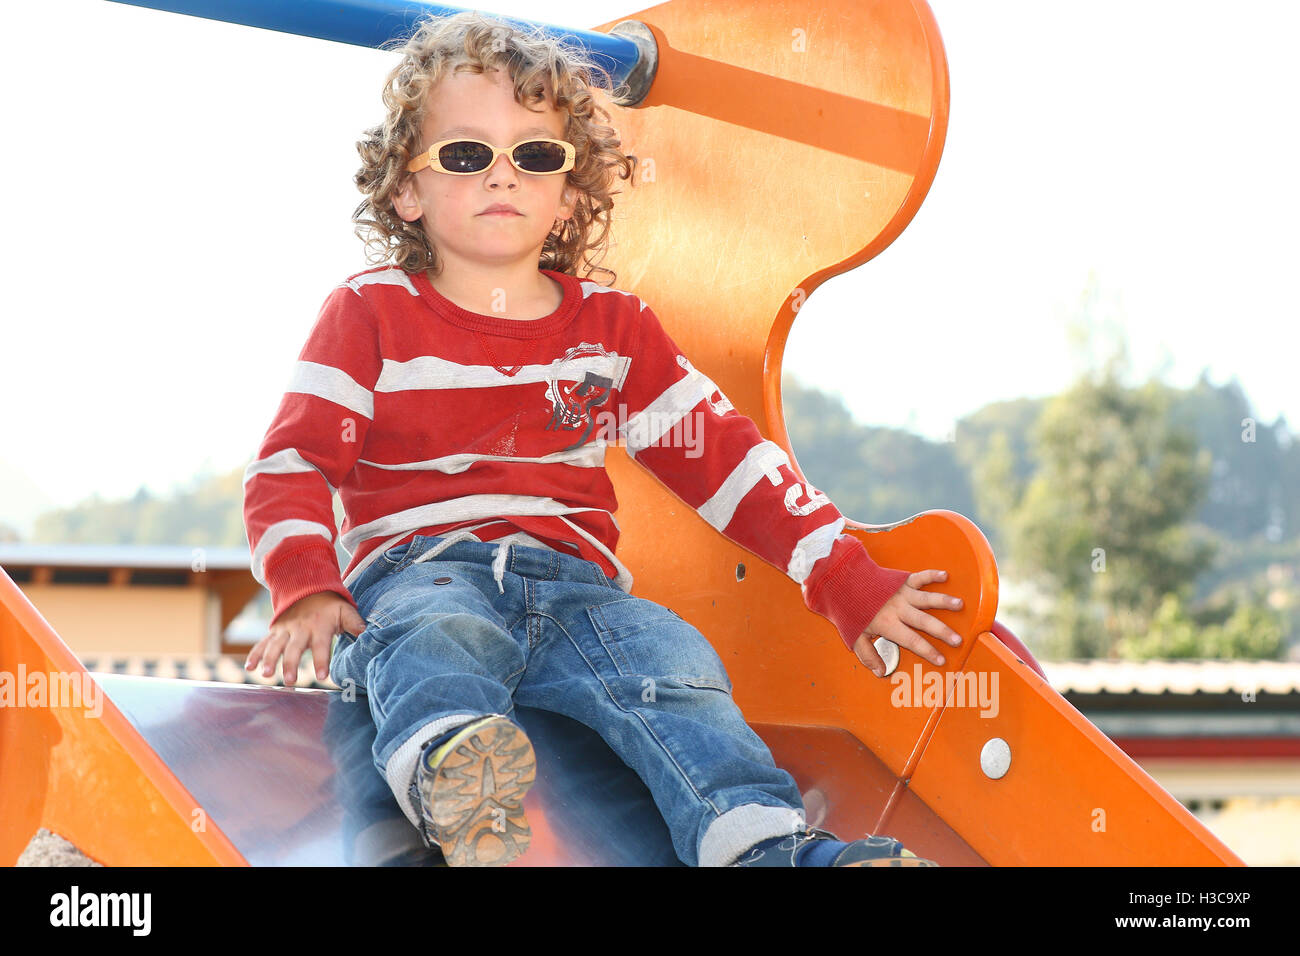 Blonden lockigen Haaren Kind mit Sonnenbrille auf dem Spielplatz spielen Stockfoto